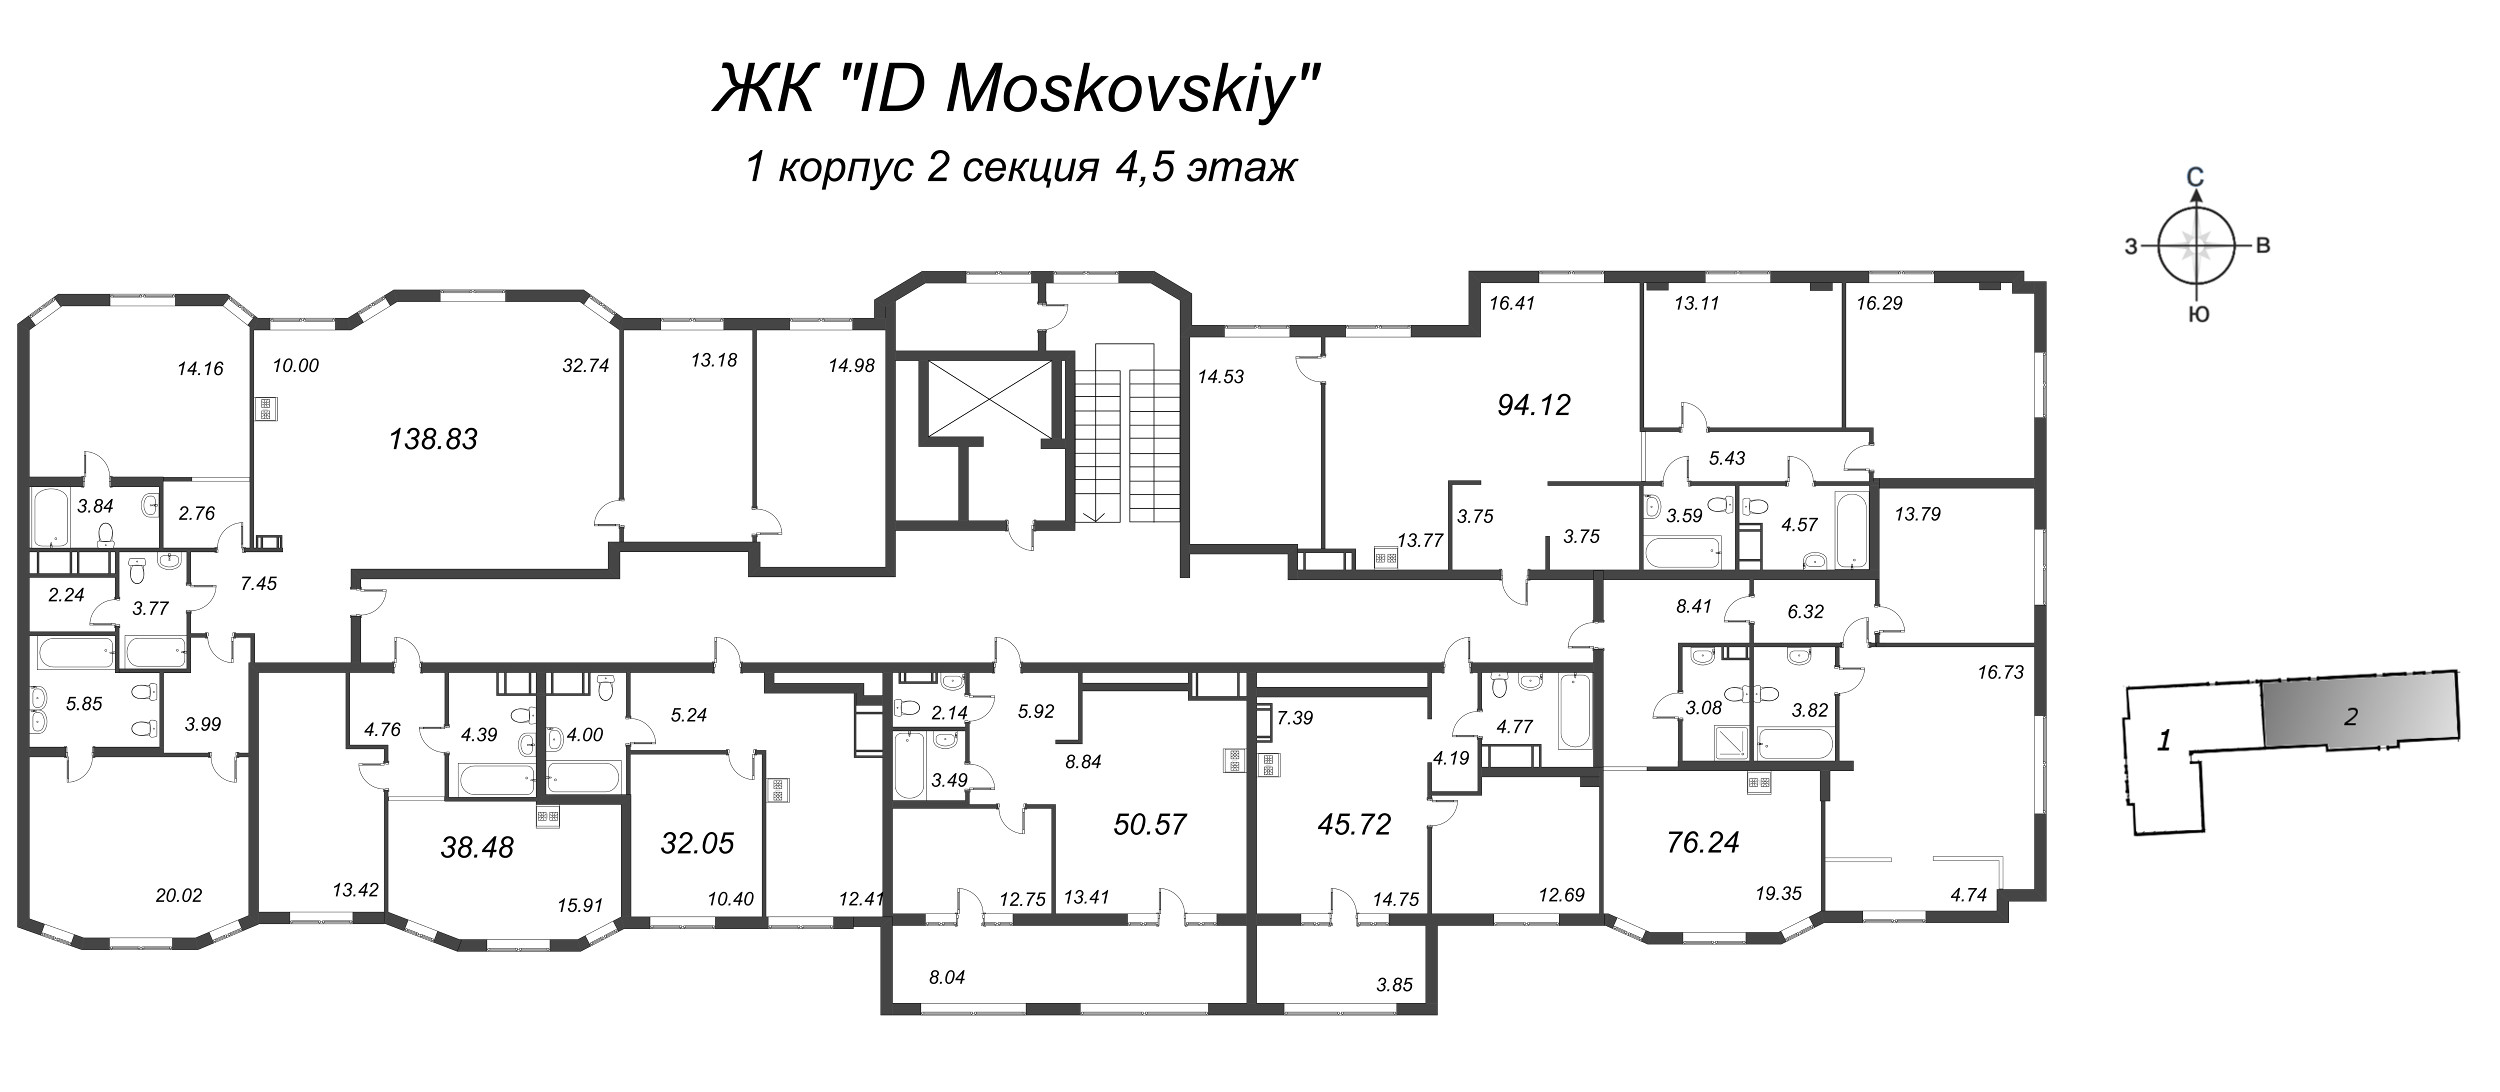 4-комнатная (Евро) квартира, 94.12 м² в ЖК "ID Moskovskiy" - планировка этажа